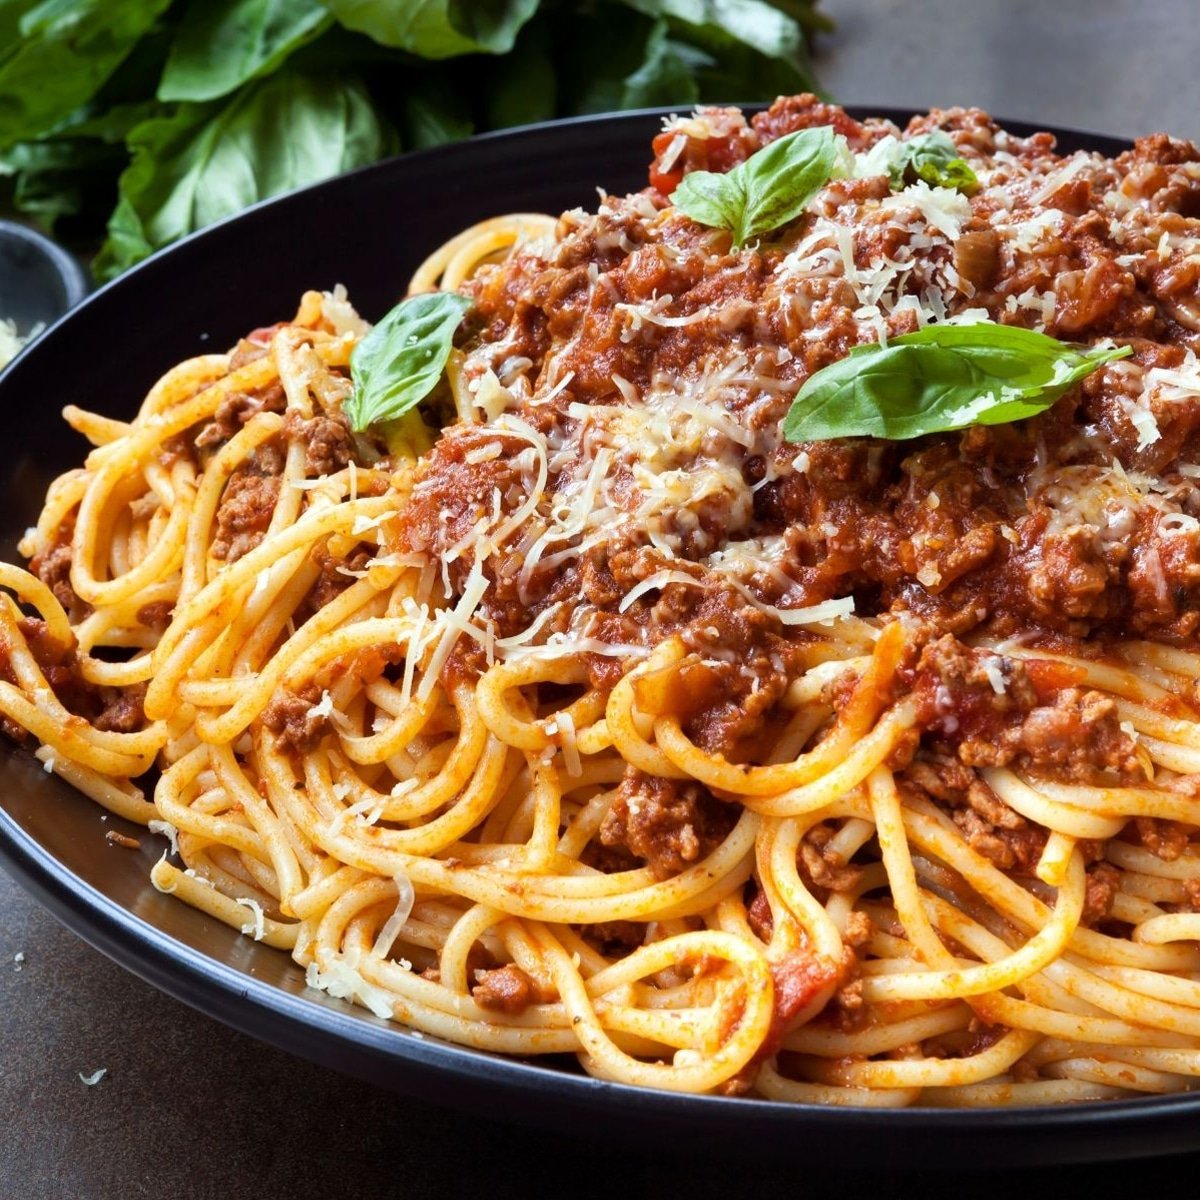 Špageti bolognese na crnom tanjuru s parmezanom i ukrasom od bosiljka.